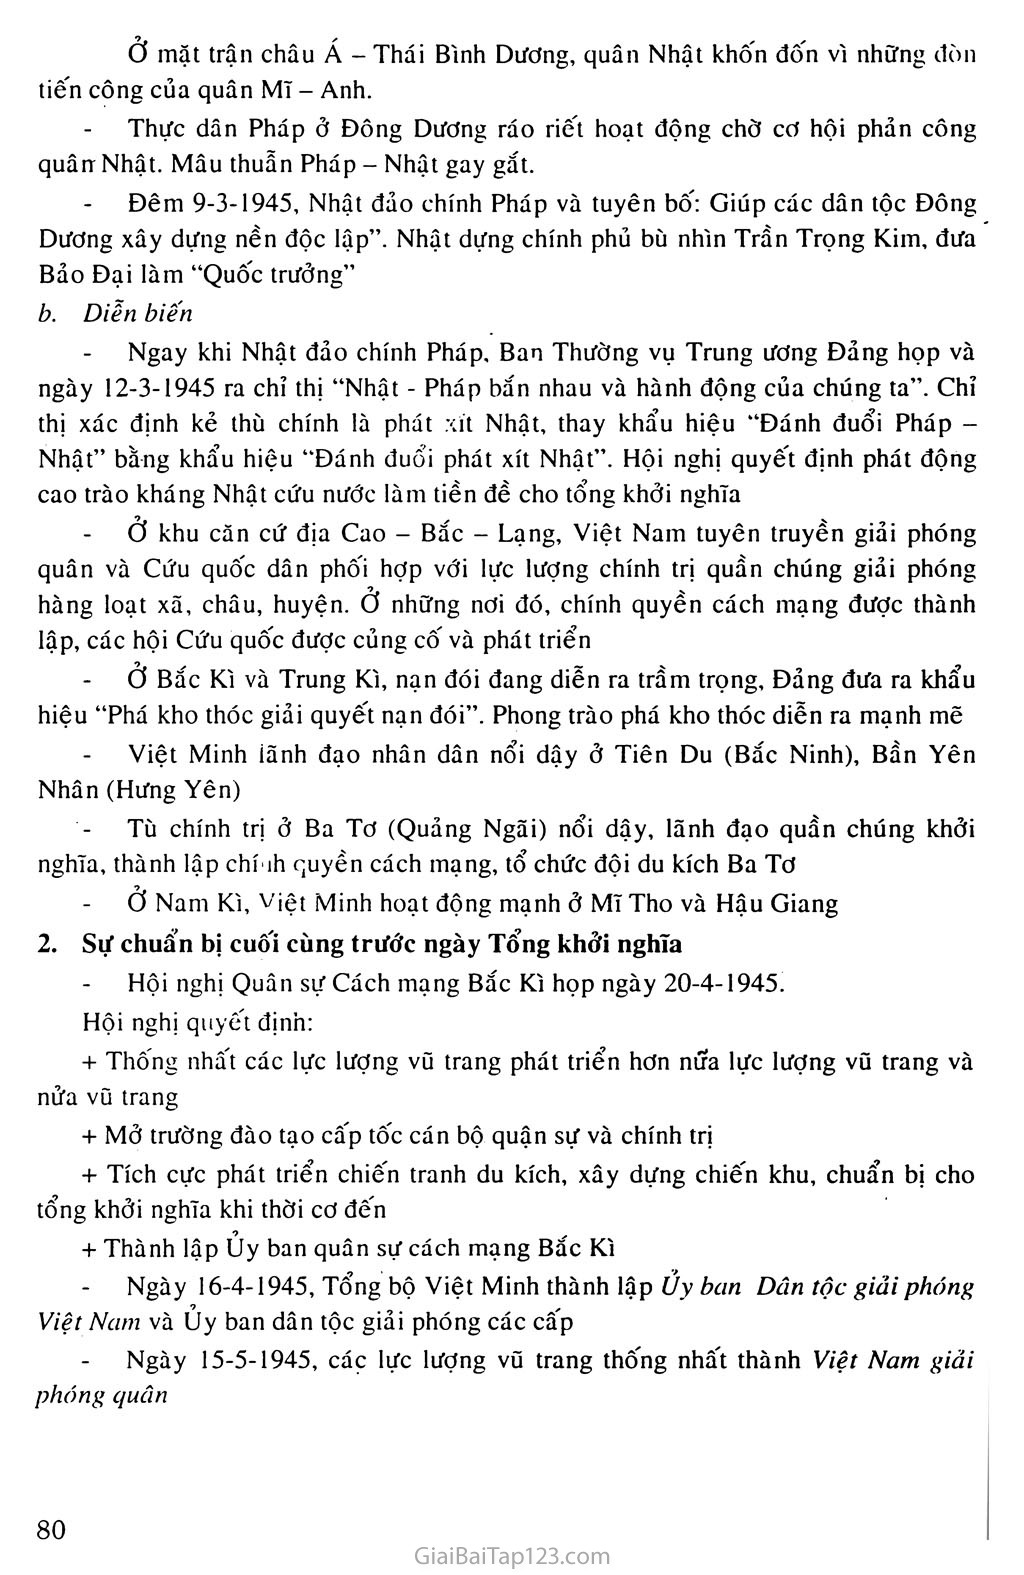 Bài 16: Phong trào giải phóng dân tộc và Tổng khởi nghĩa tháng Tám (1939 - 1945). Nước Việt Nam Dân chủ Cộng hòa ra đời trang 6